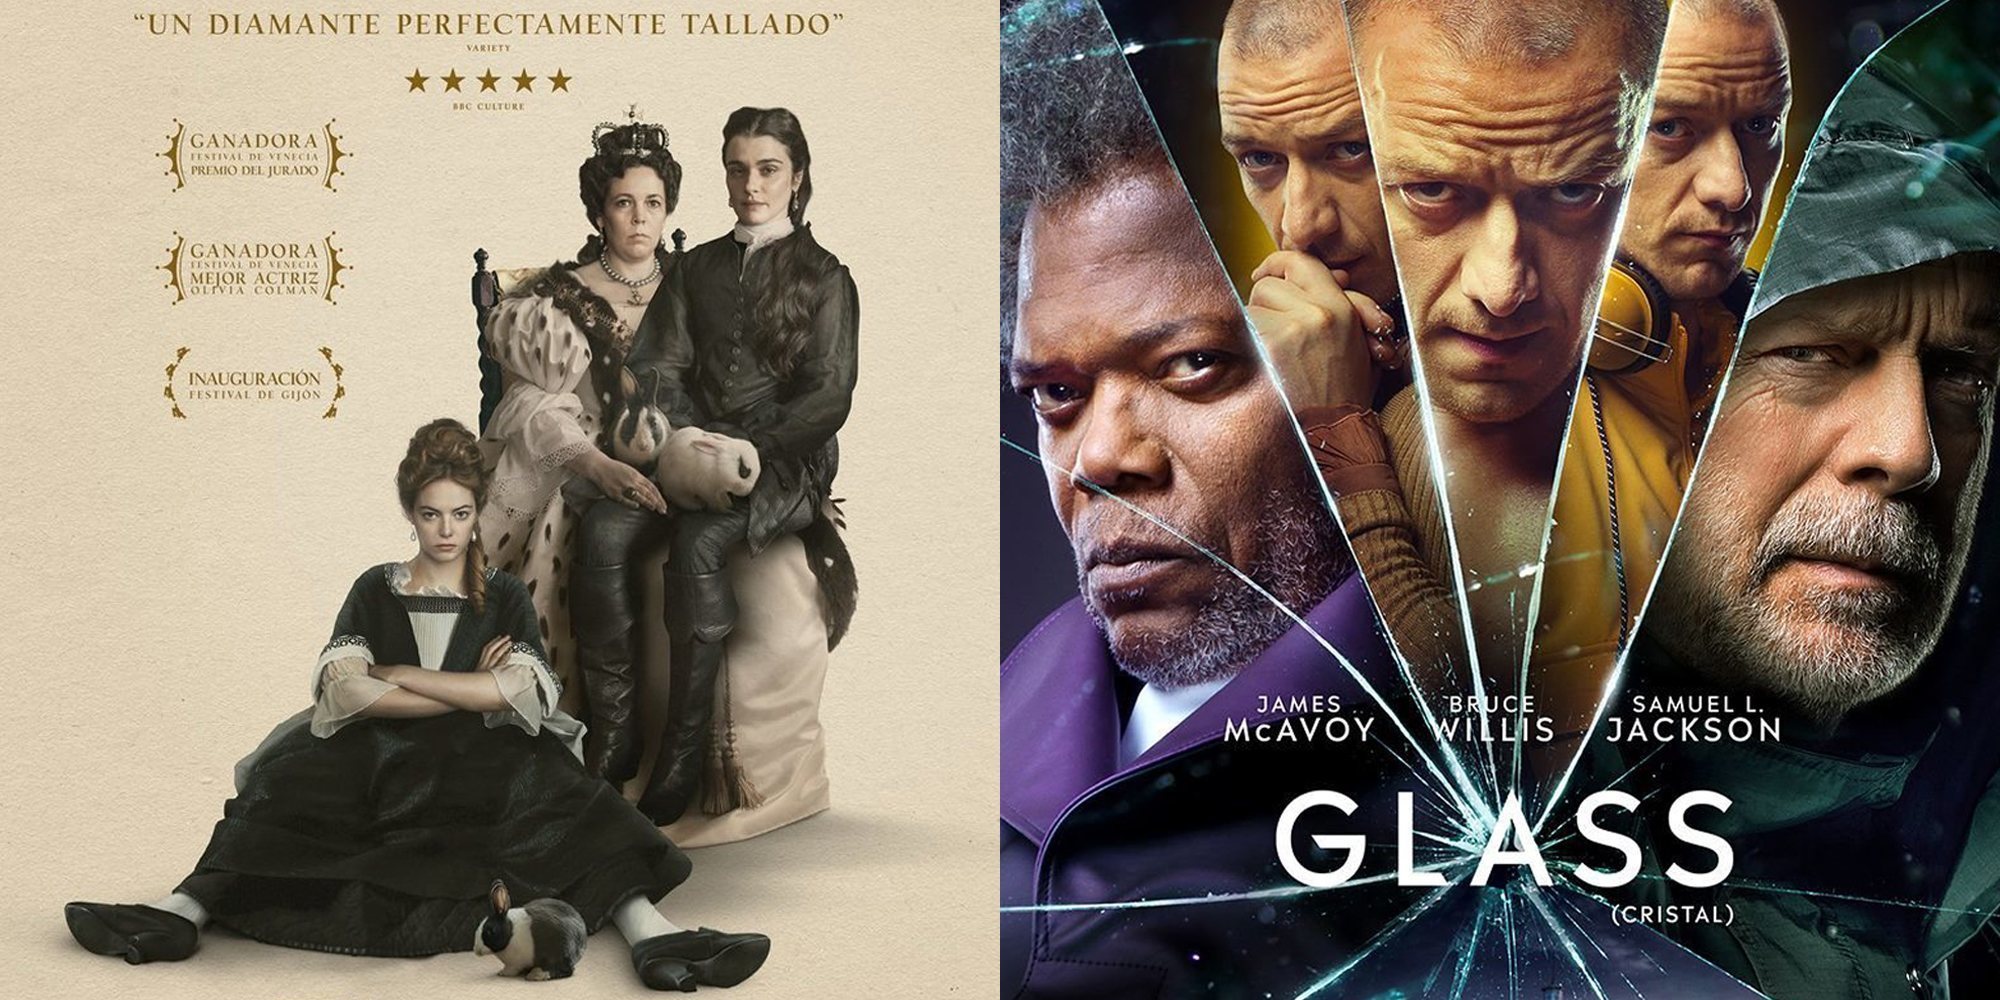 Las 5 películas más esperadas de enero de 2019